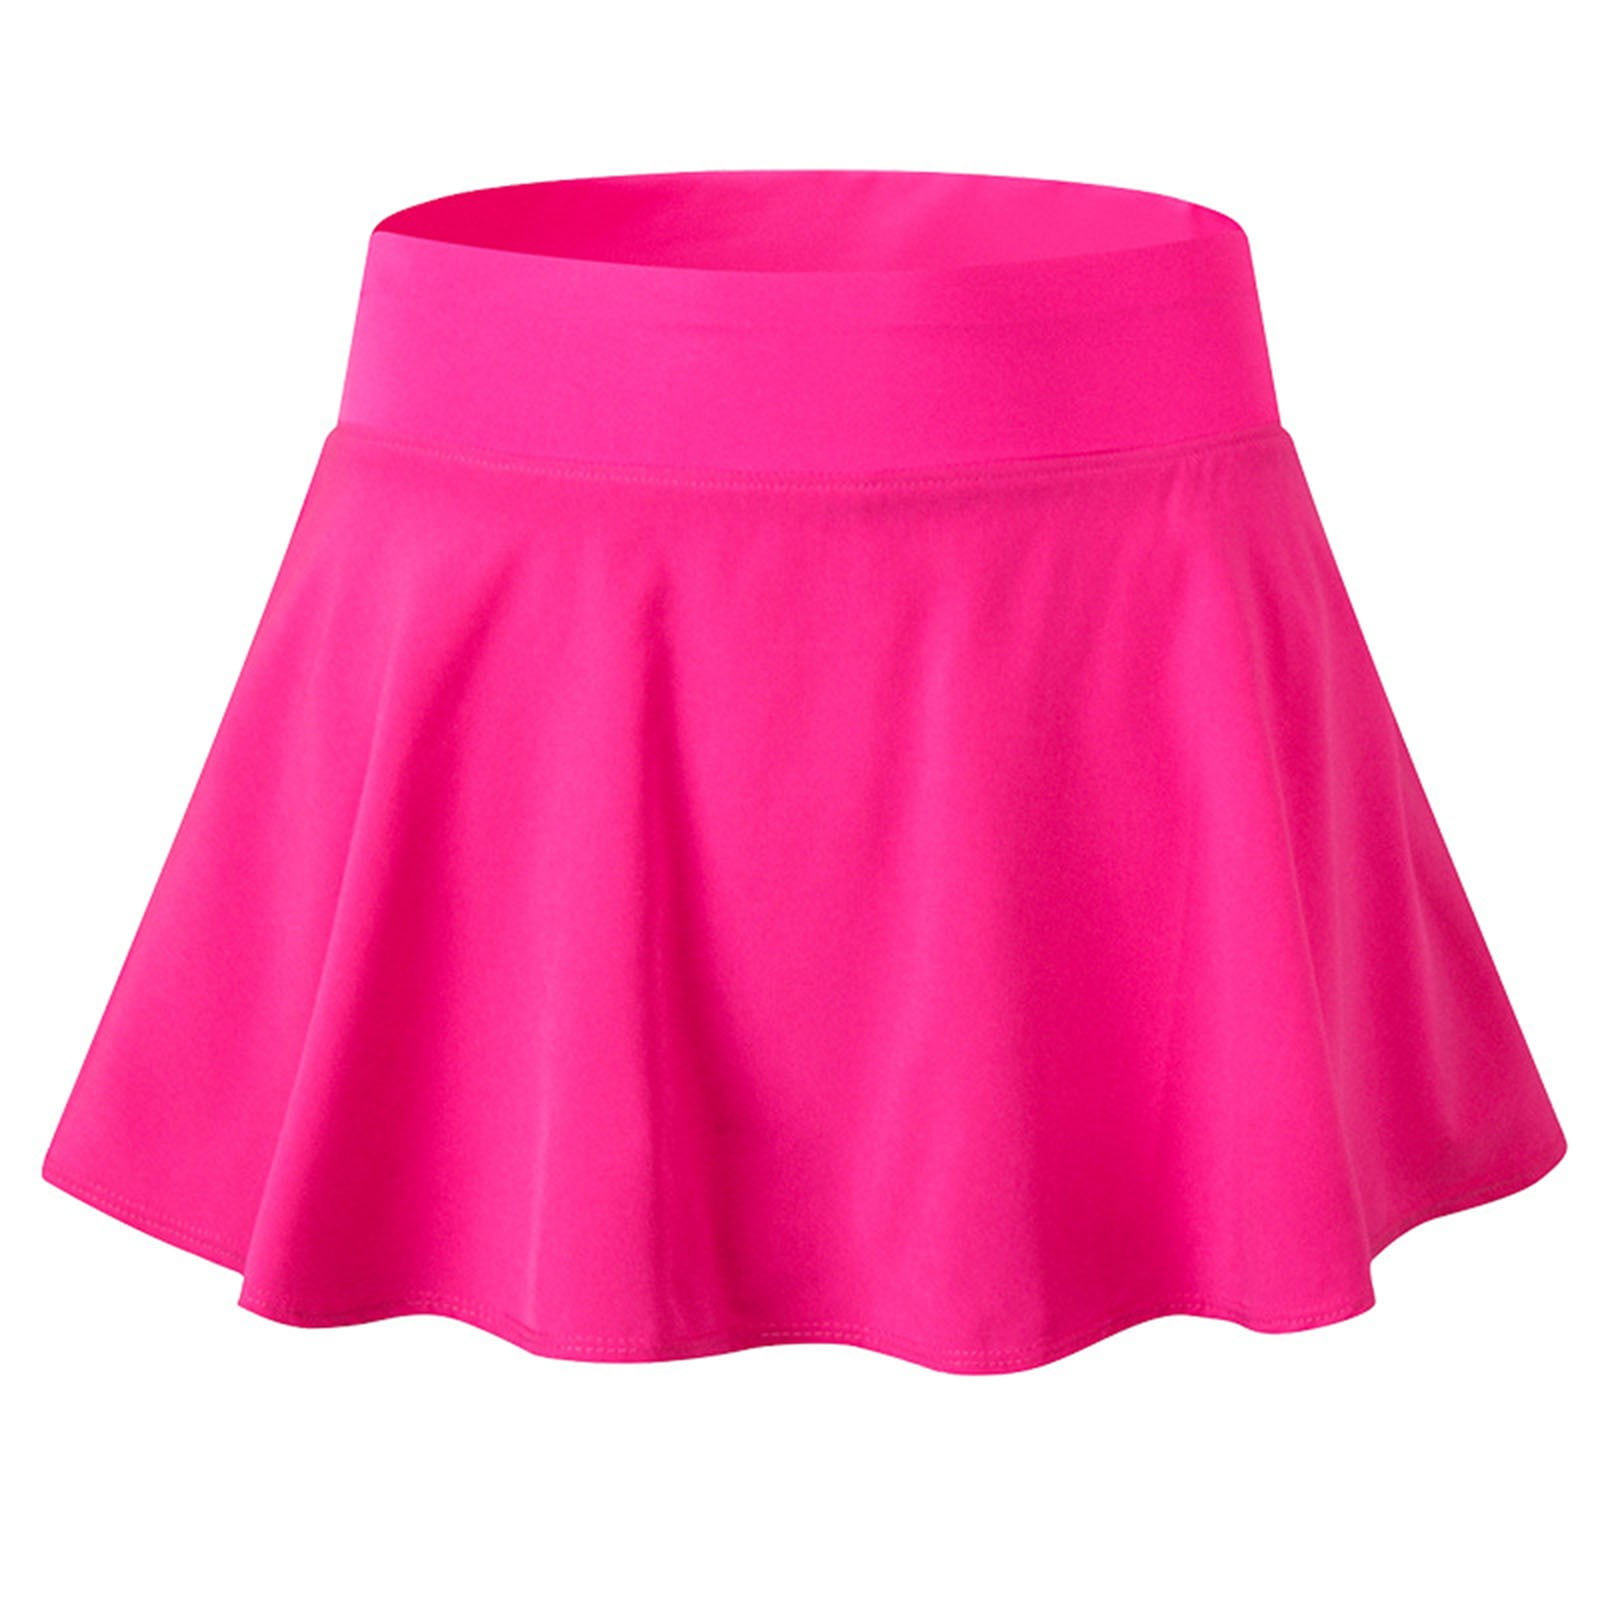 SUMMER GYMBOREE Bright & Beachy Skort Skirt Pleat Neon Pink/White Stripe 4 5 6 